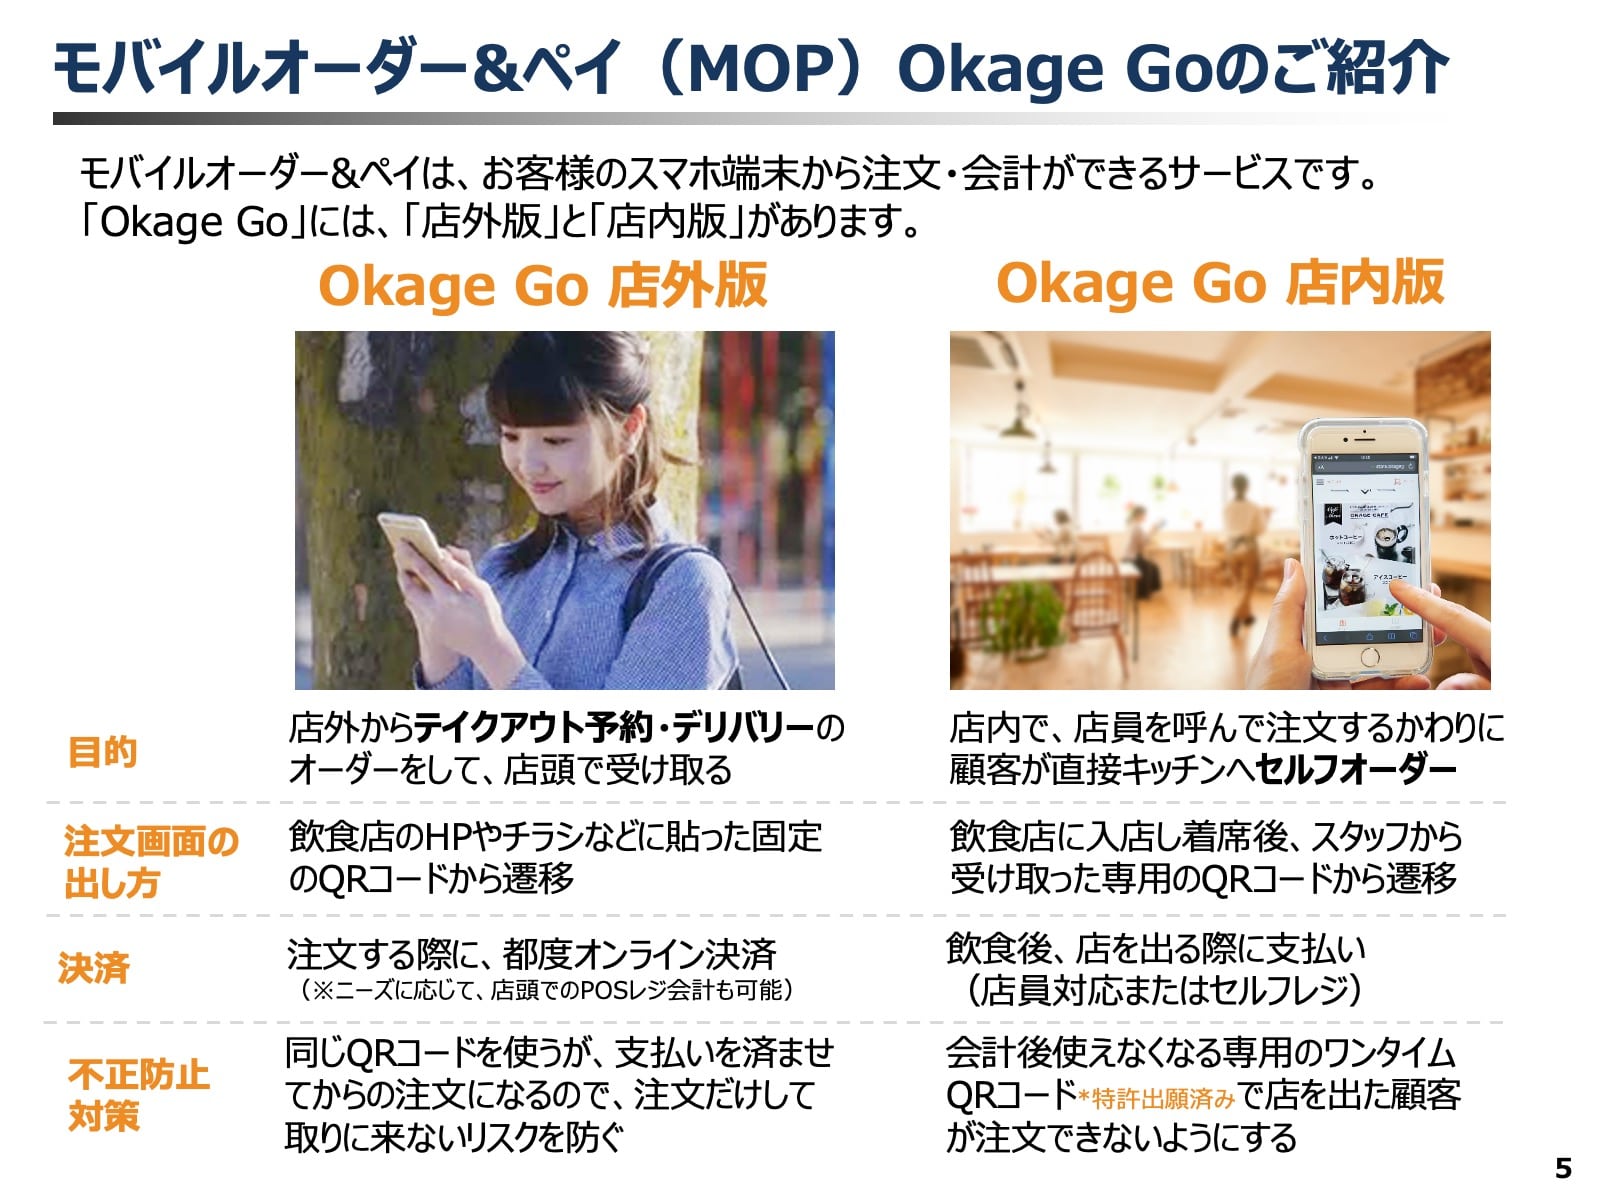 モバイルオーダー＆ペイシステム「Okage Go」